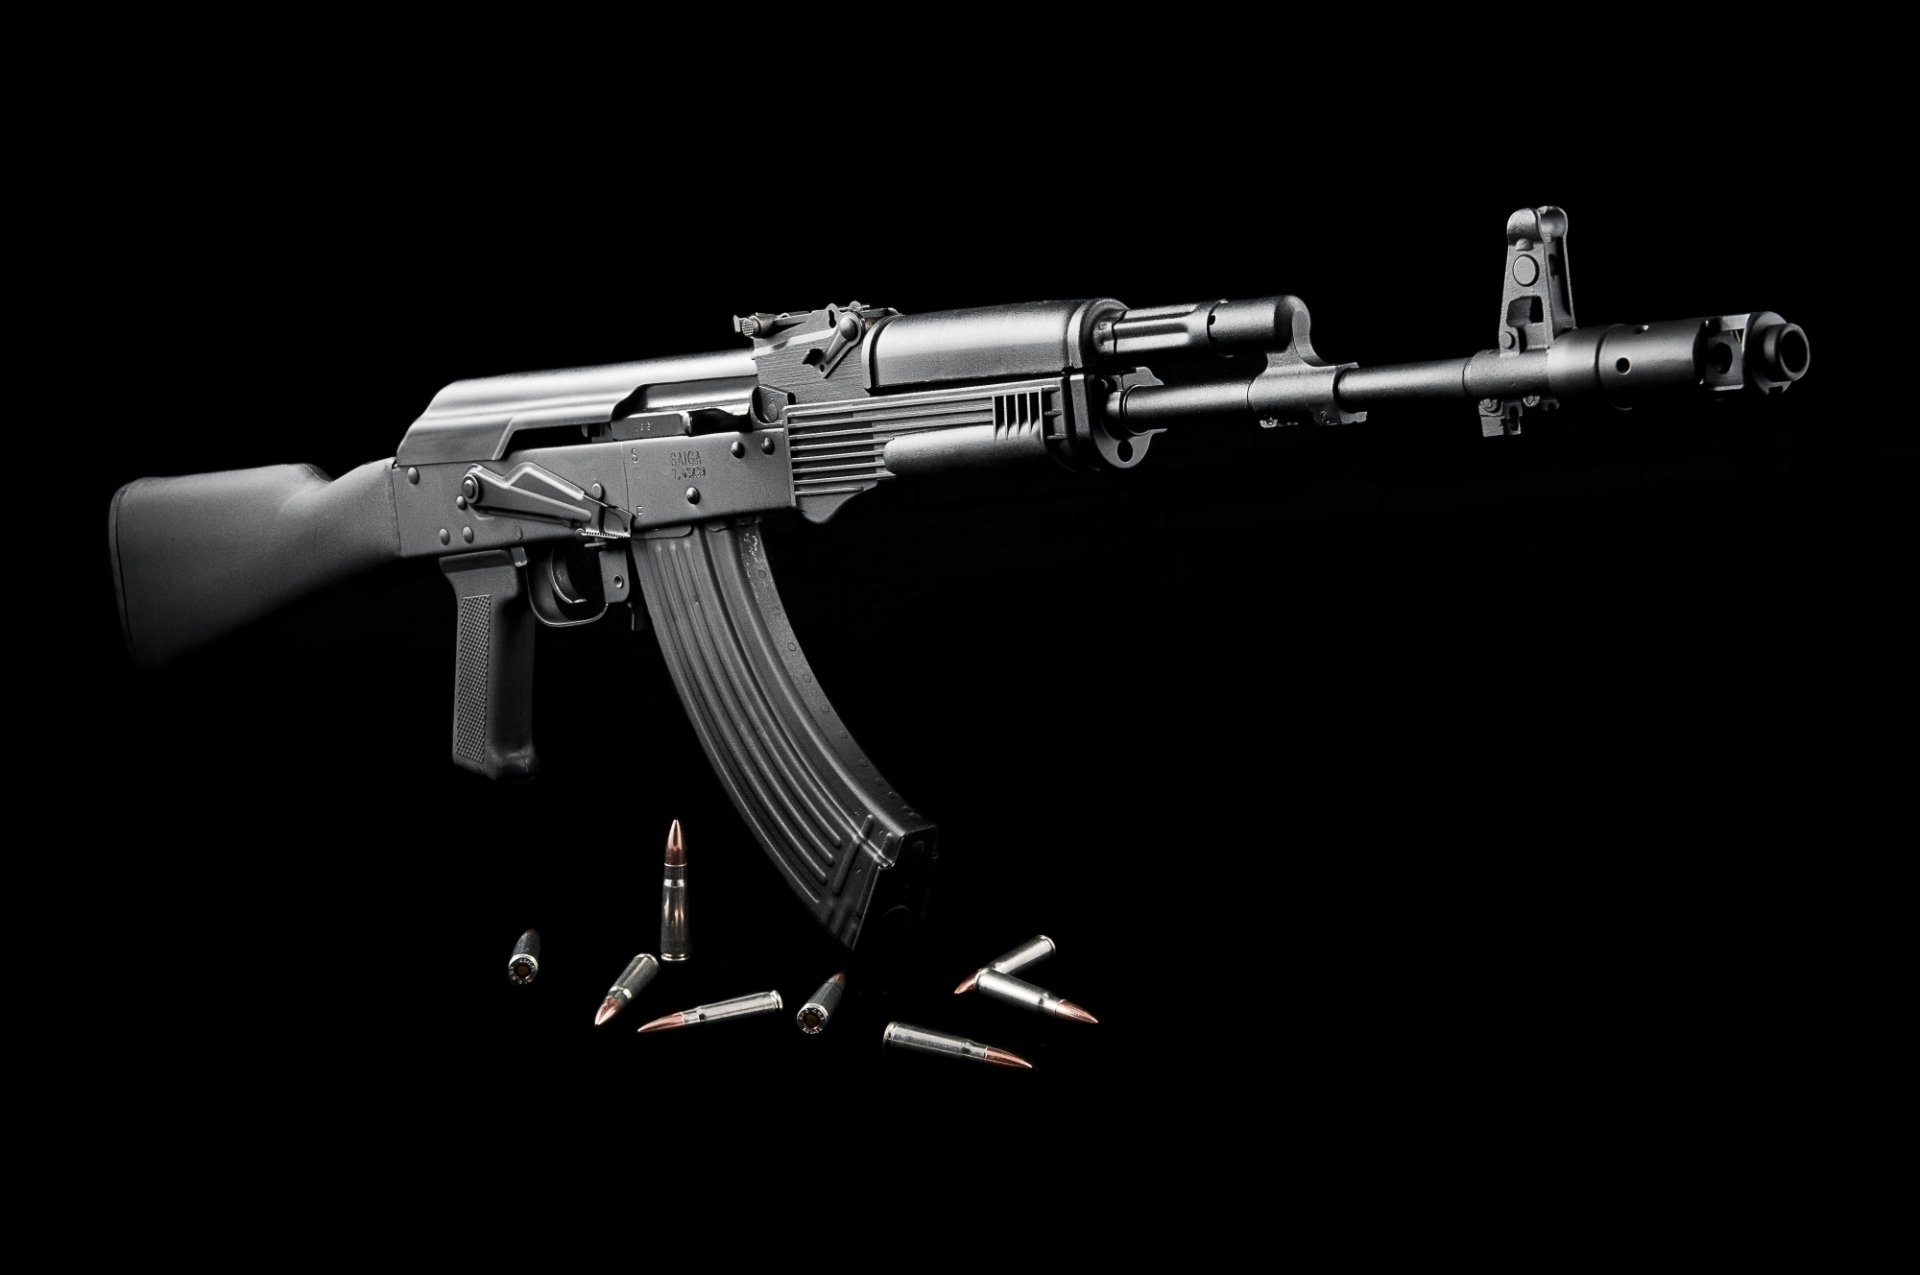 Akm Assault Rifle Hd Wallpaper Background Image 2000x1328